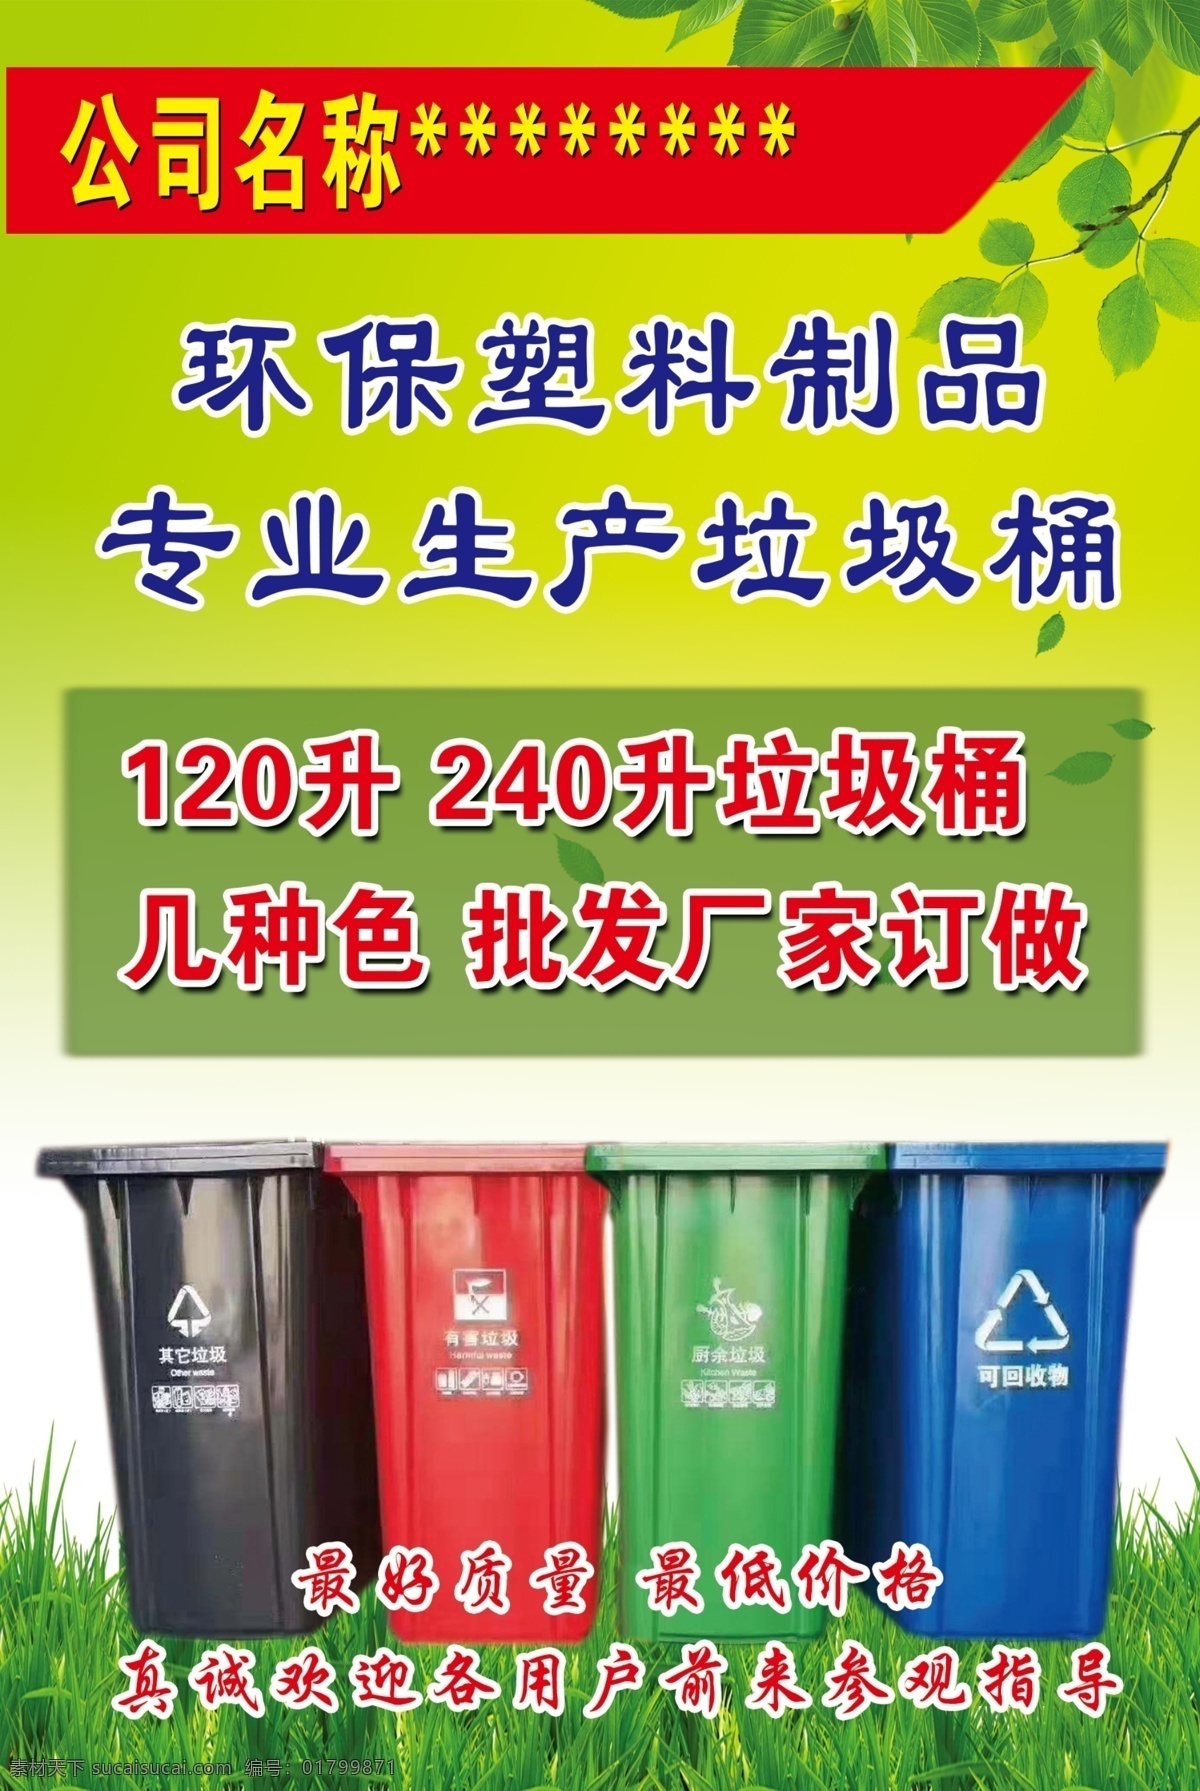 环保 塑料 垃圾桶 塑料制作 厂家 批发 塑胶 生活百科 生活用品